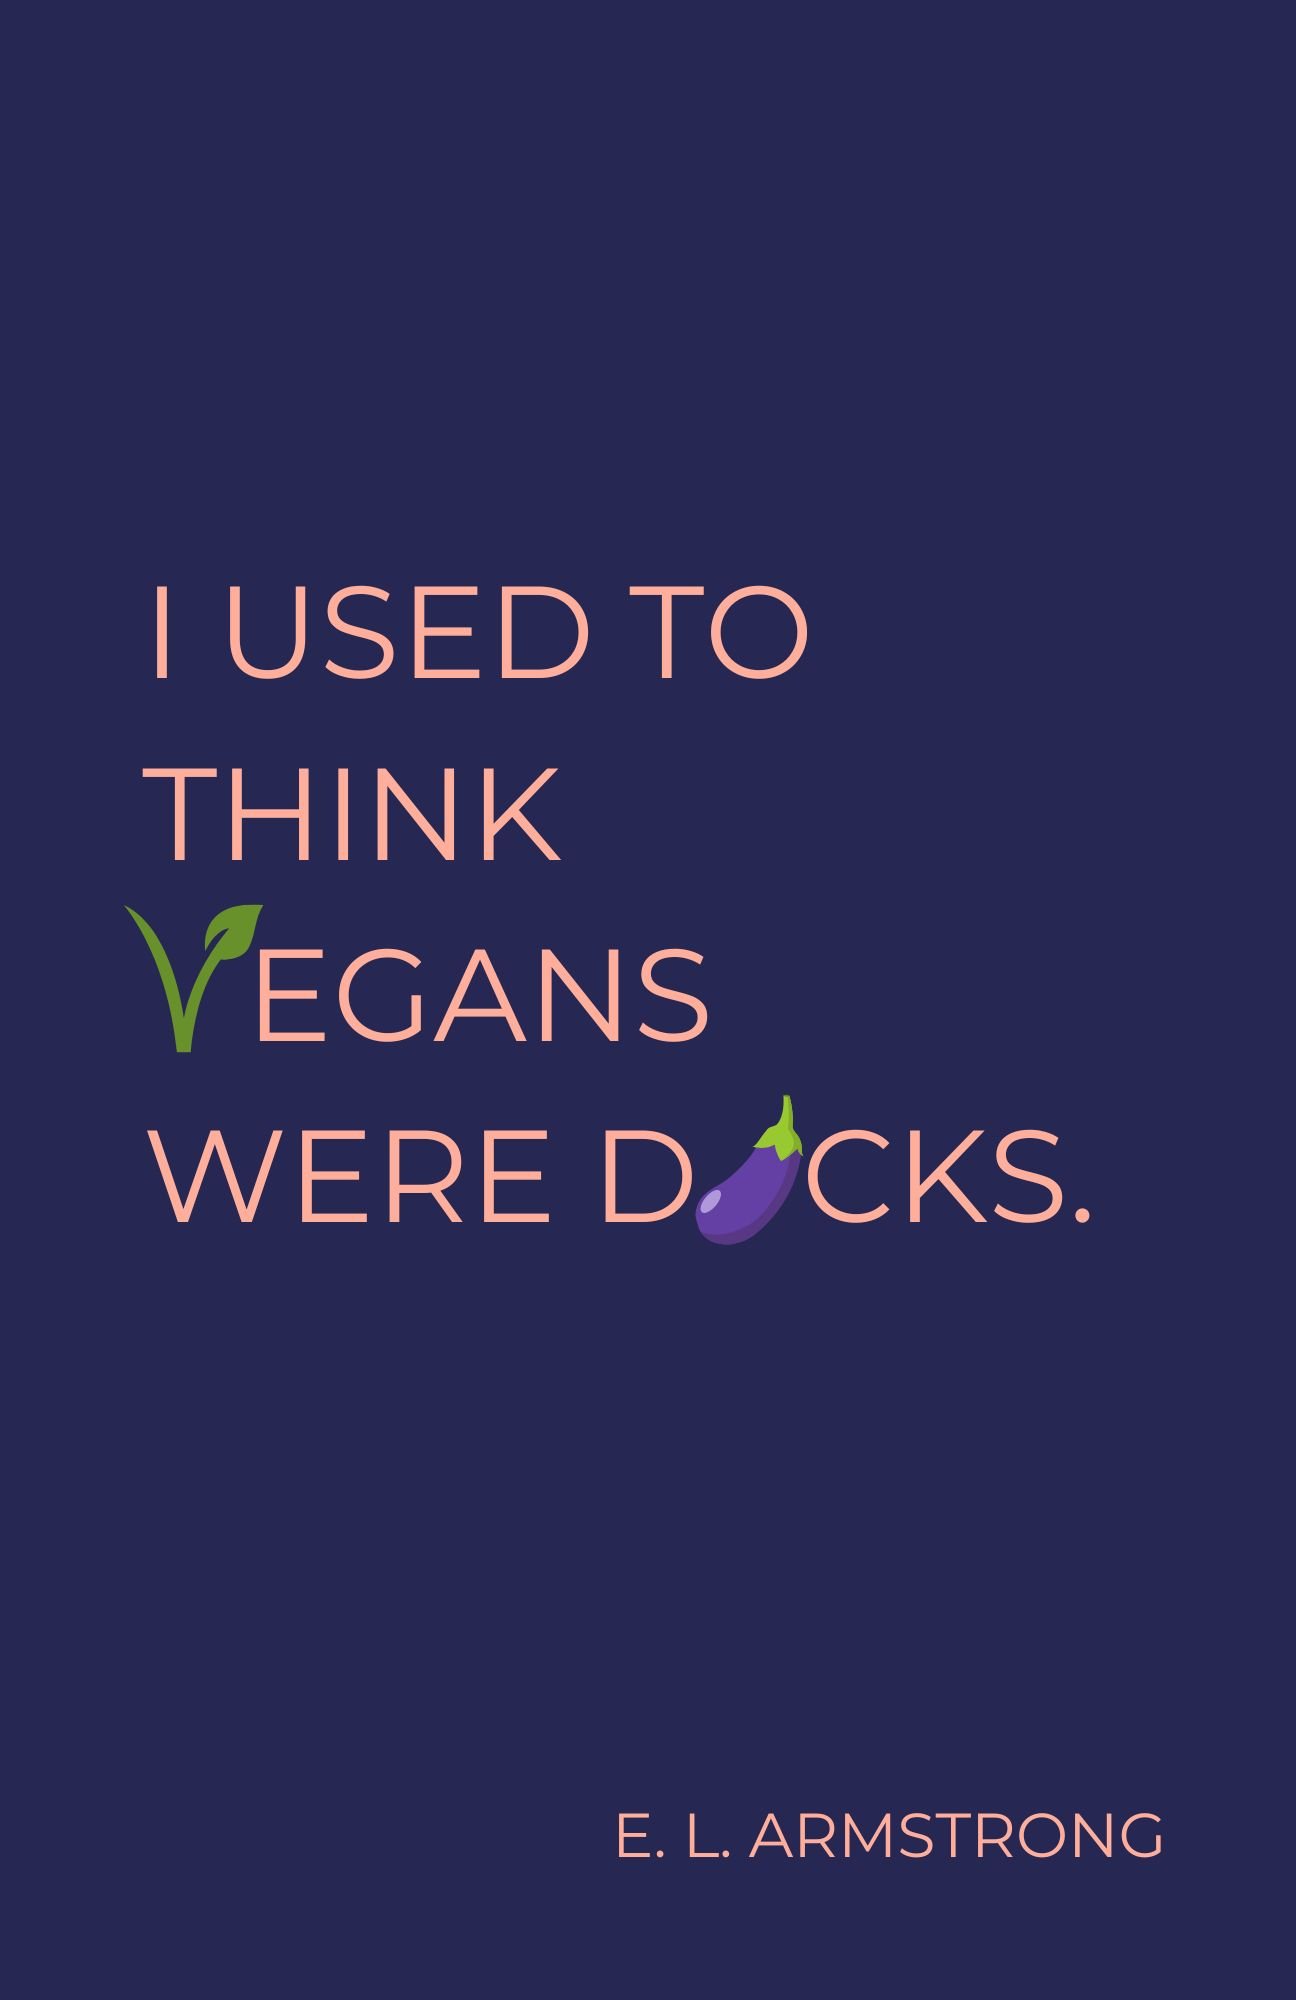 I Used to Think Vegans Were Dicks e-cover.jpg